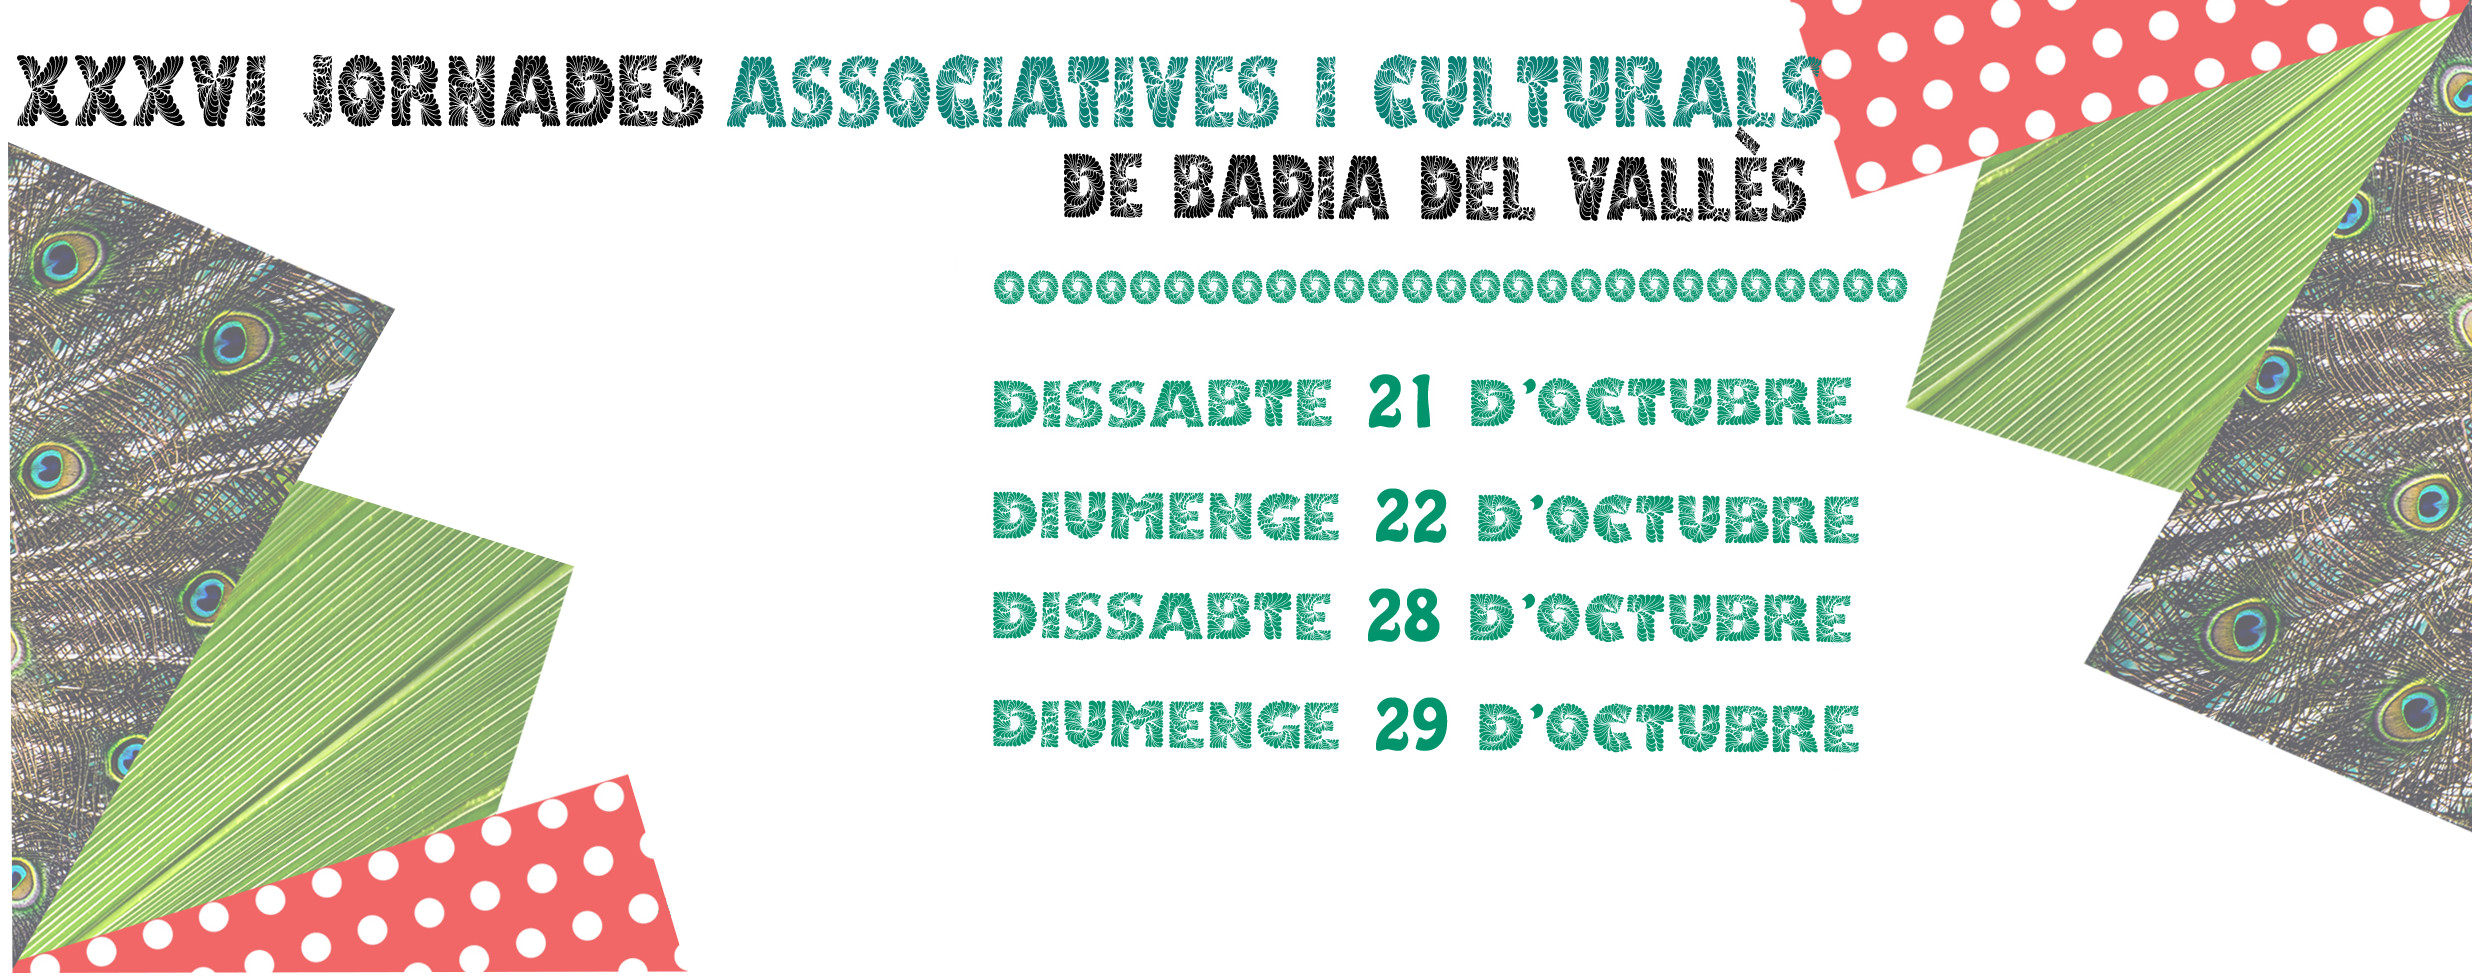 XXXVI Jornades Associatives i Culturals de Badia del Valls